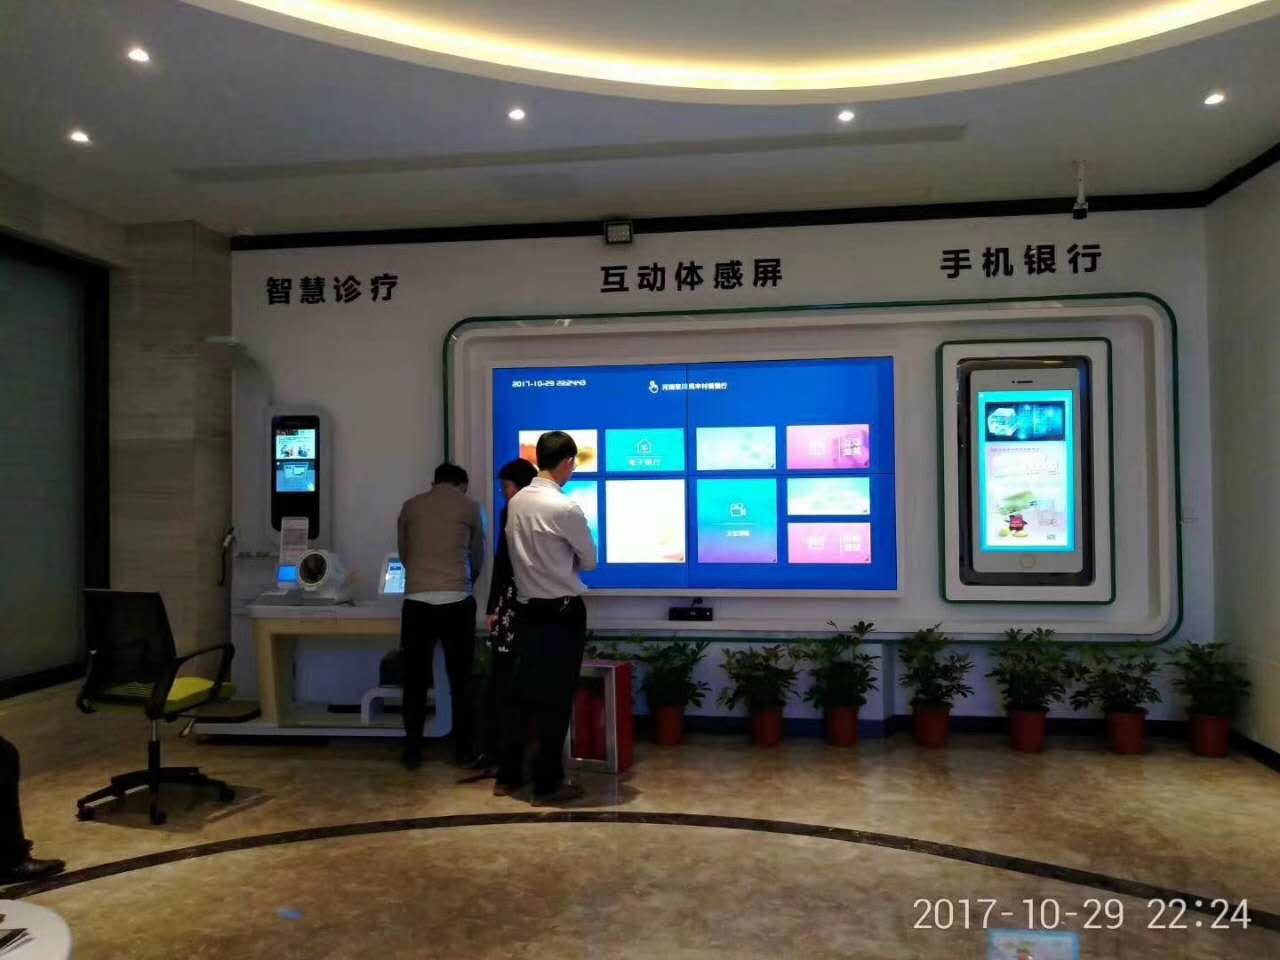 行业解决方案:深圳市感融互联网金融服务有限公司 2